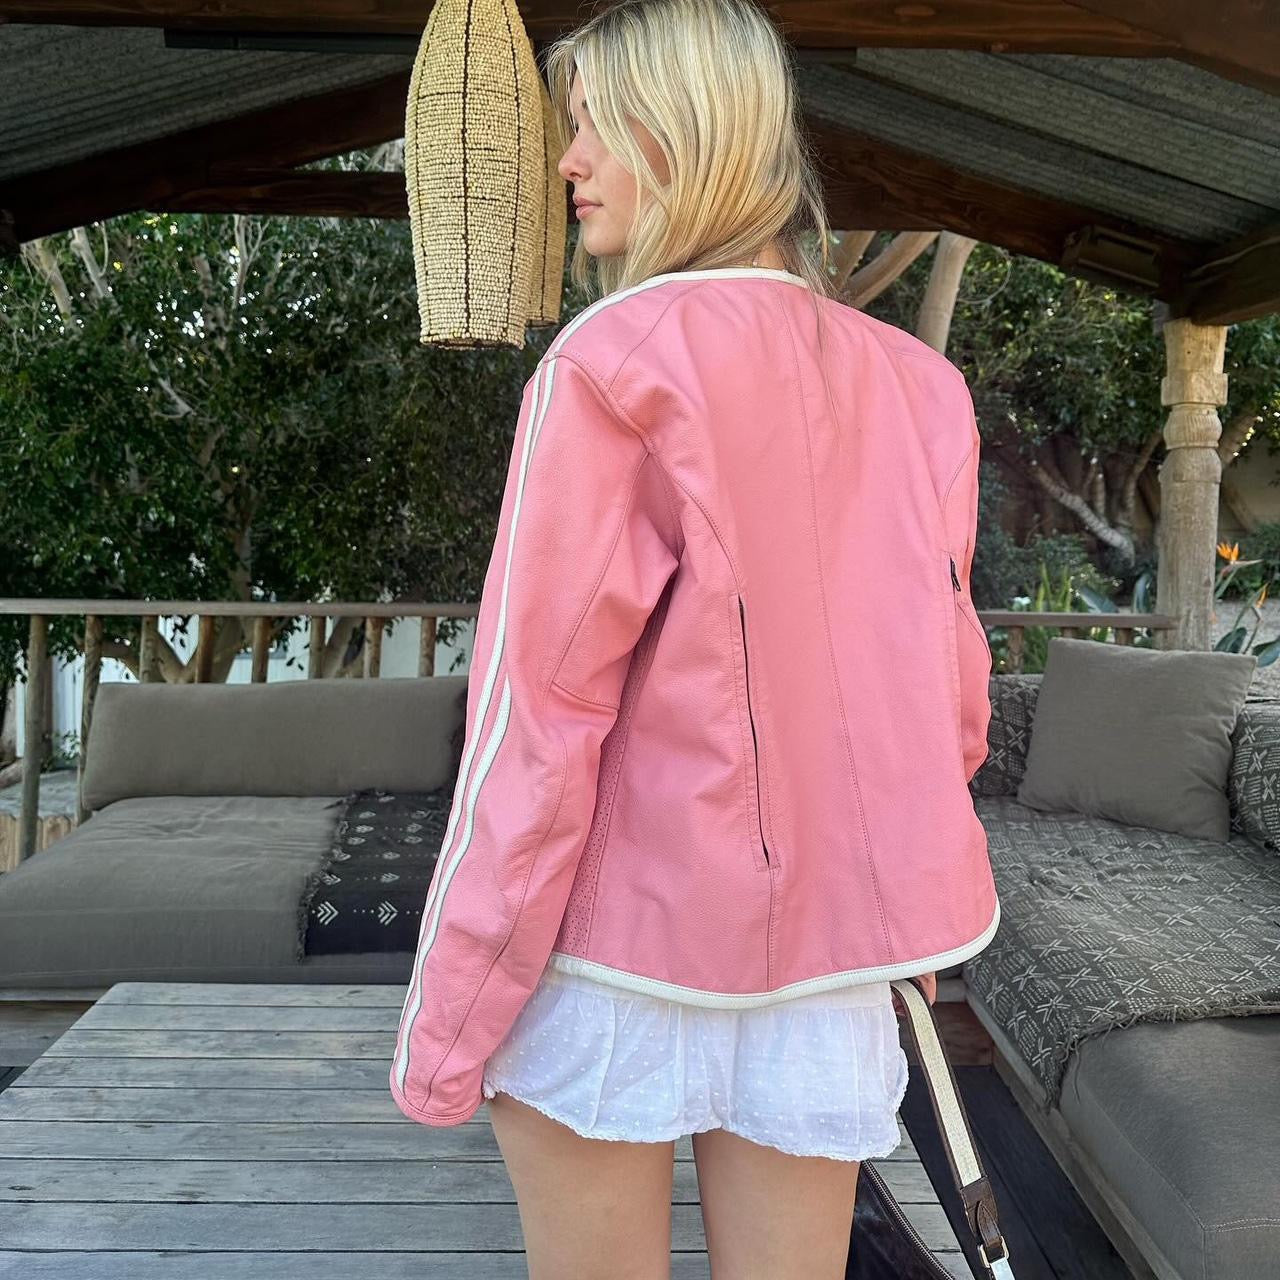 Vintage pink leather jacket 💕